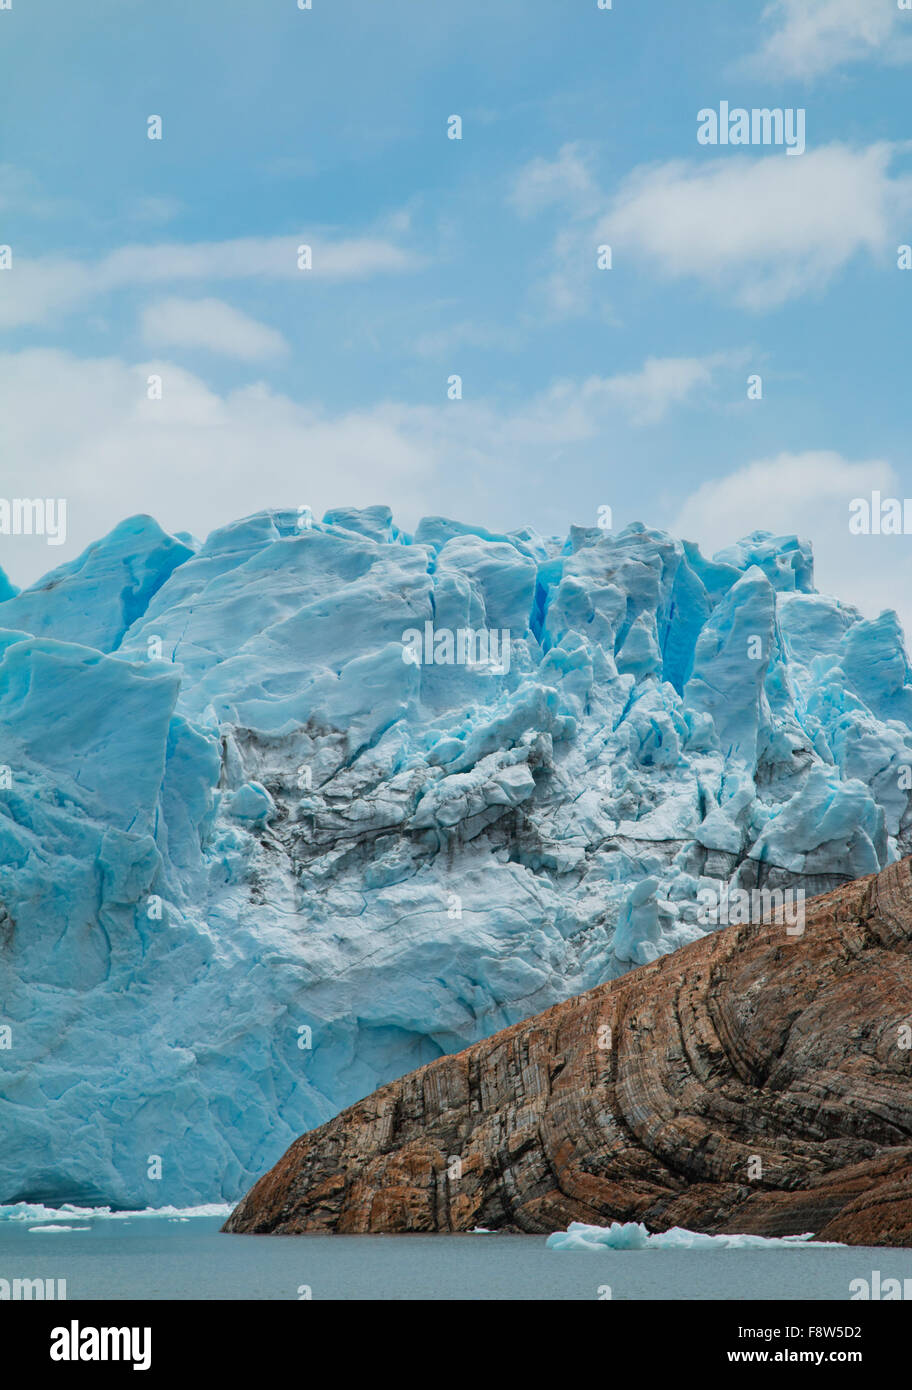 View of the side of the Perito Moreno Glacier in Argentina Stock Photo